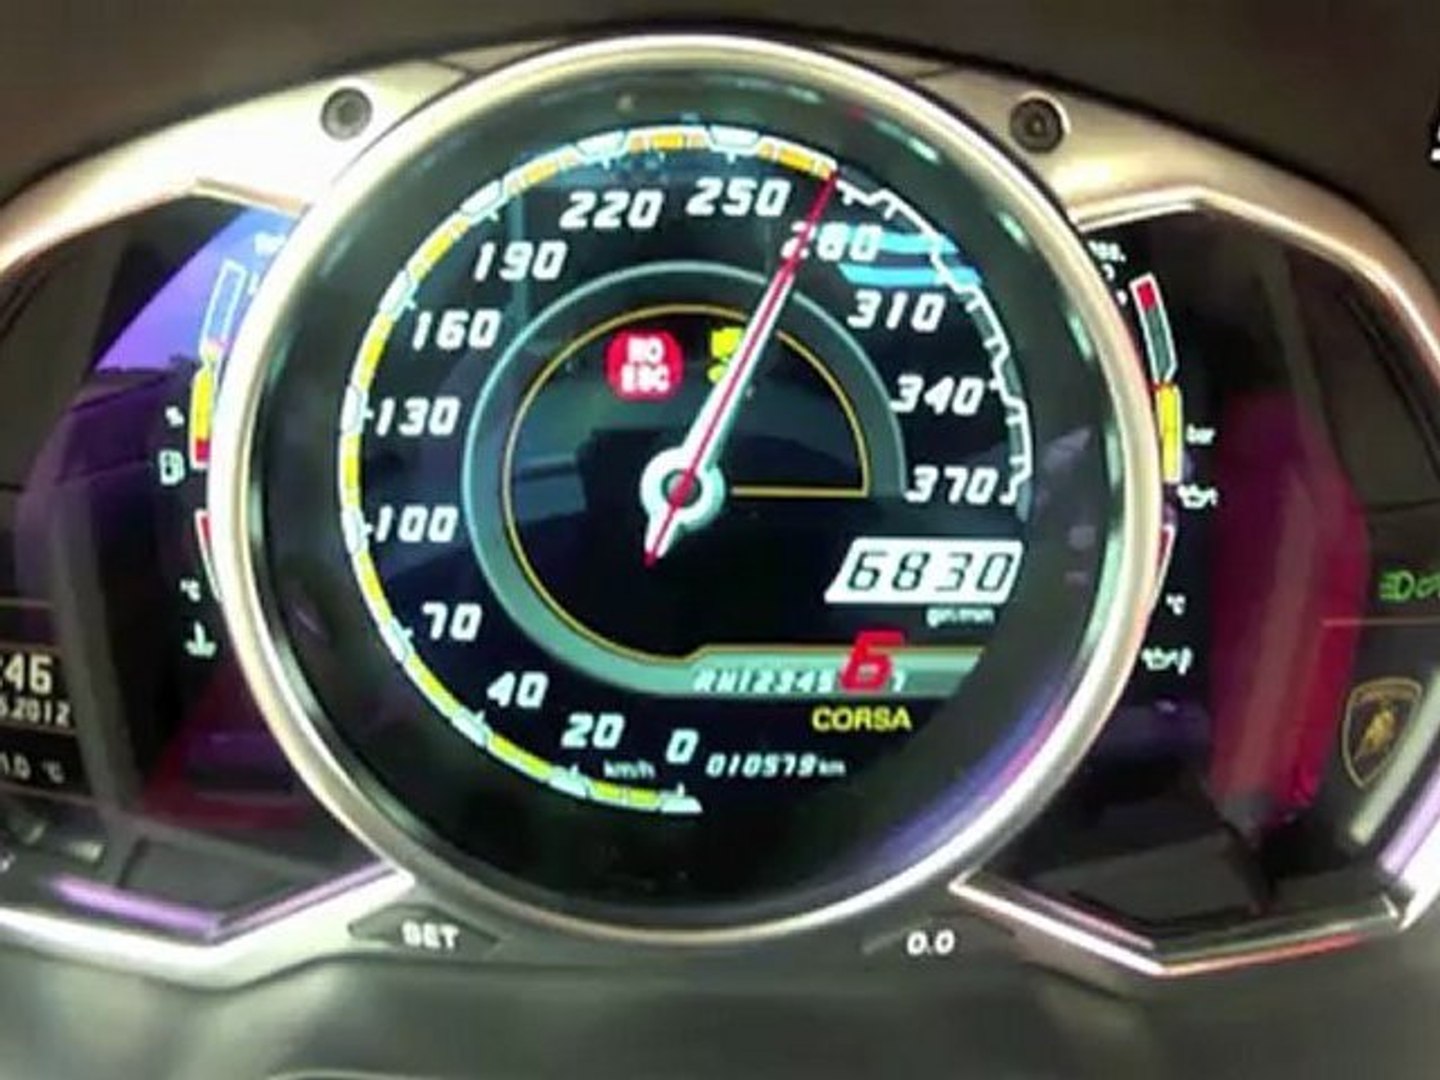 92 км в часах. Lamborghini Aventador lp700 Speedometer. Ламборгини спидометр максимальная скорость. Спидометр Ламборджини авентадор. Lamborghini Urus спидометр.